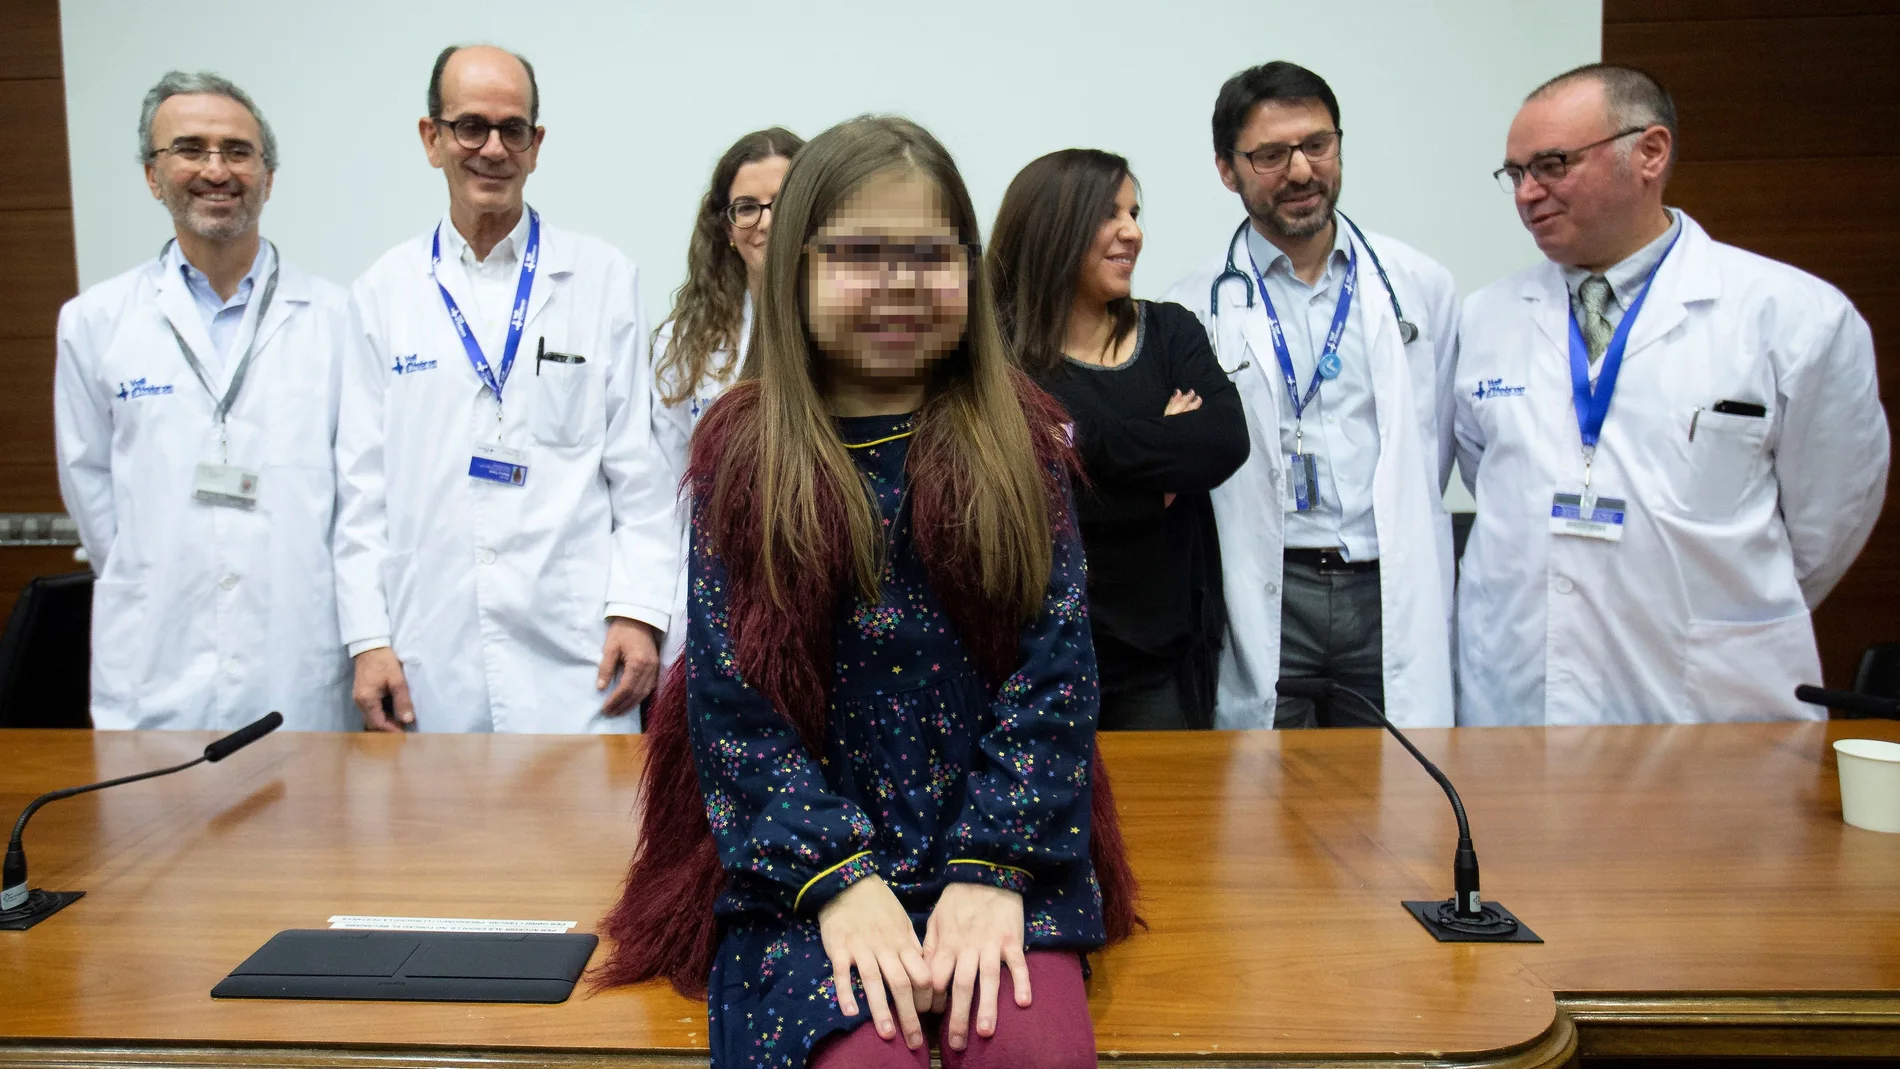 GRAFCAT9467. BARCELONA, 03/01/2020.- Iria, una niña de 10 años con una mutación genética ultrarrara y que se ha convertido en el primer paciente pediátrico triple trasplantado de corazón, hígado y riñón de España, posa junto a su madre, Judith (3d), y el equipo médico que la ha tratado, momentos antes de la rueda de prensa que han ofrecido en el Hospital Vall d'Hebron de Barcelona. EFE/Enric Fontcuberta.